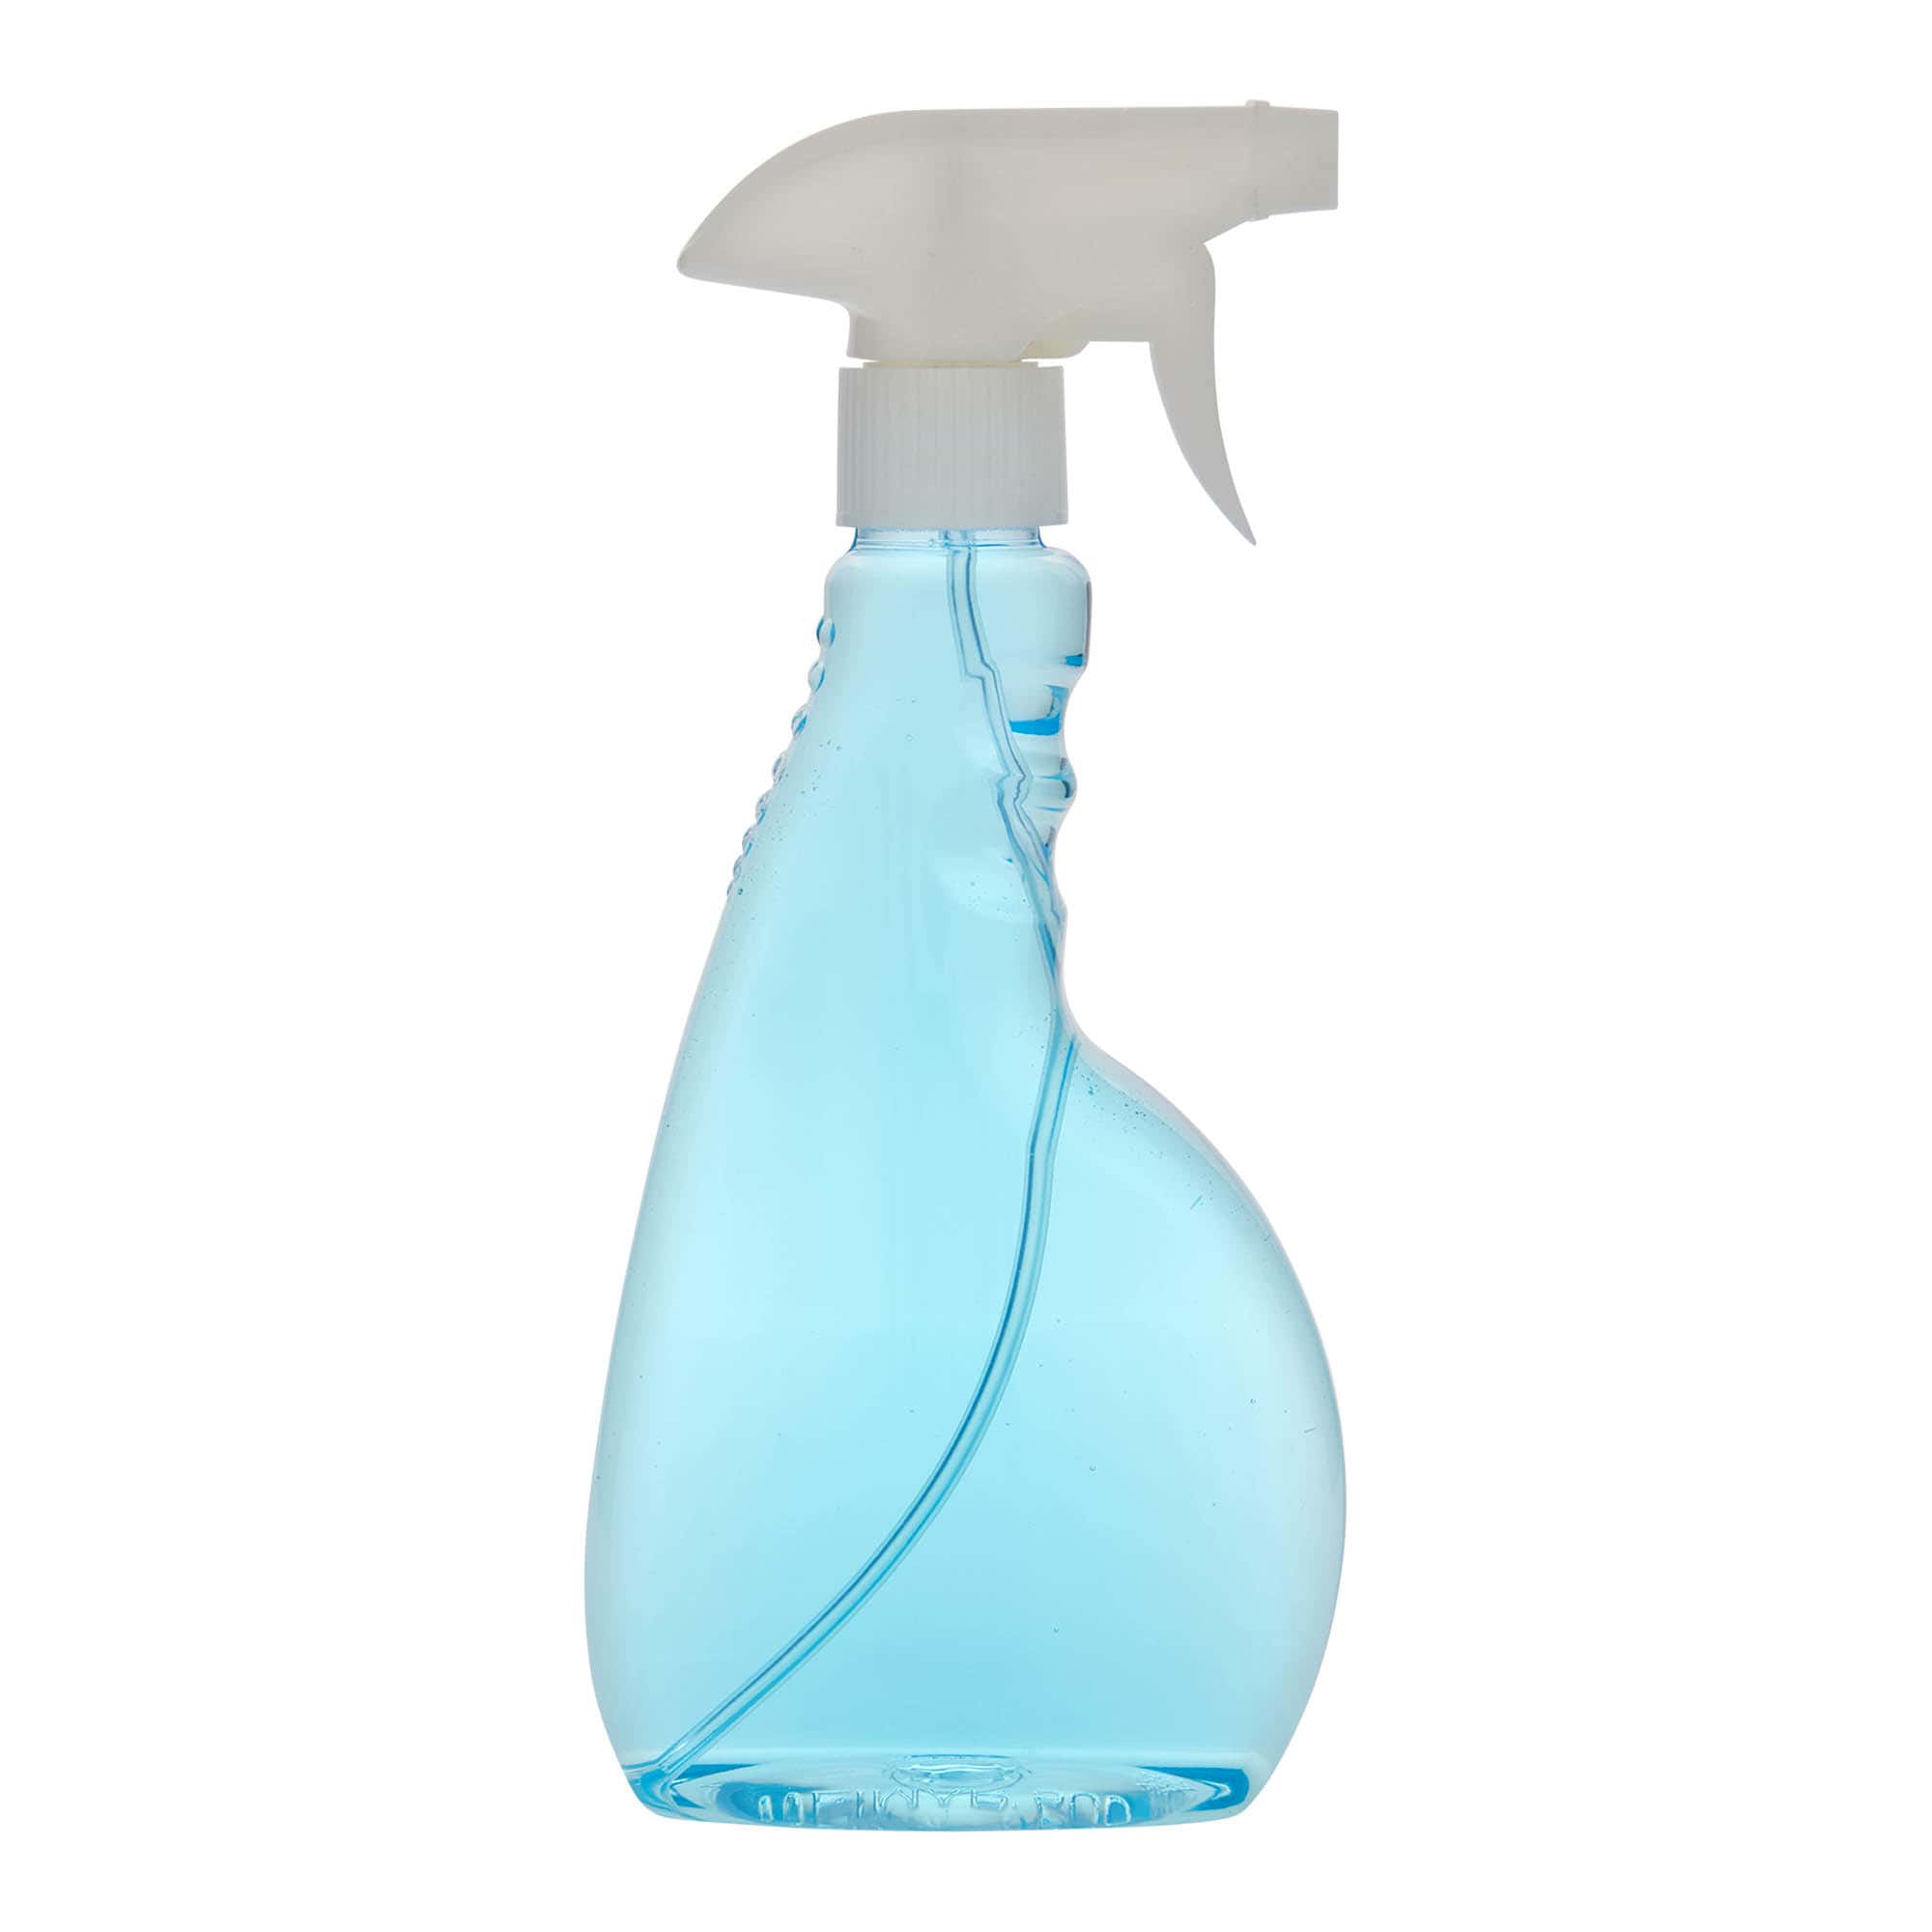 500 ml PET spray bottle 'Piccobello', rectangular, plastic, closure: screw cap